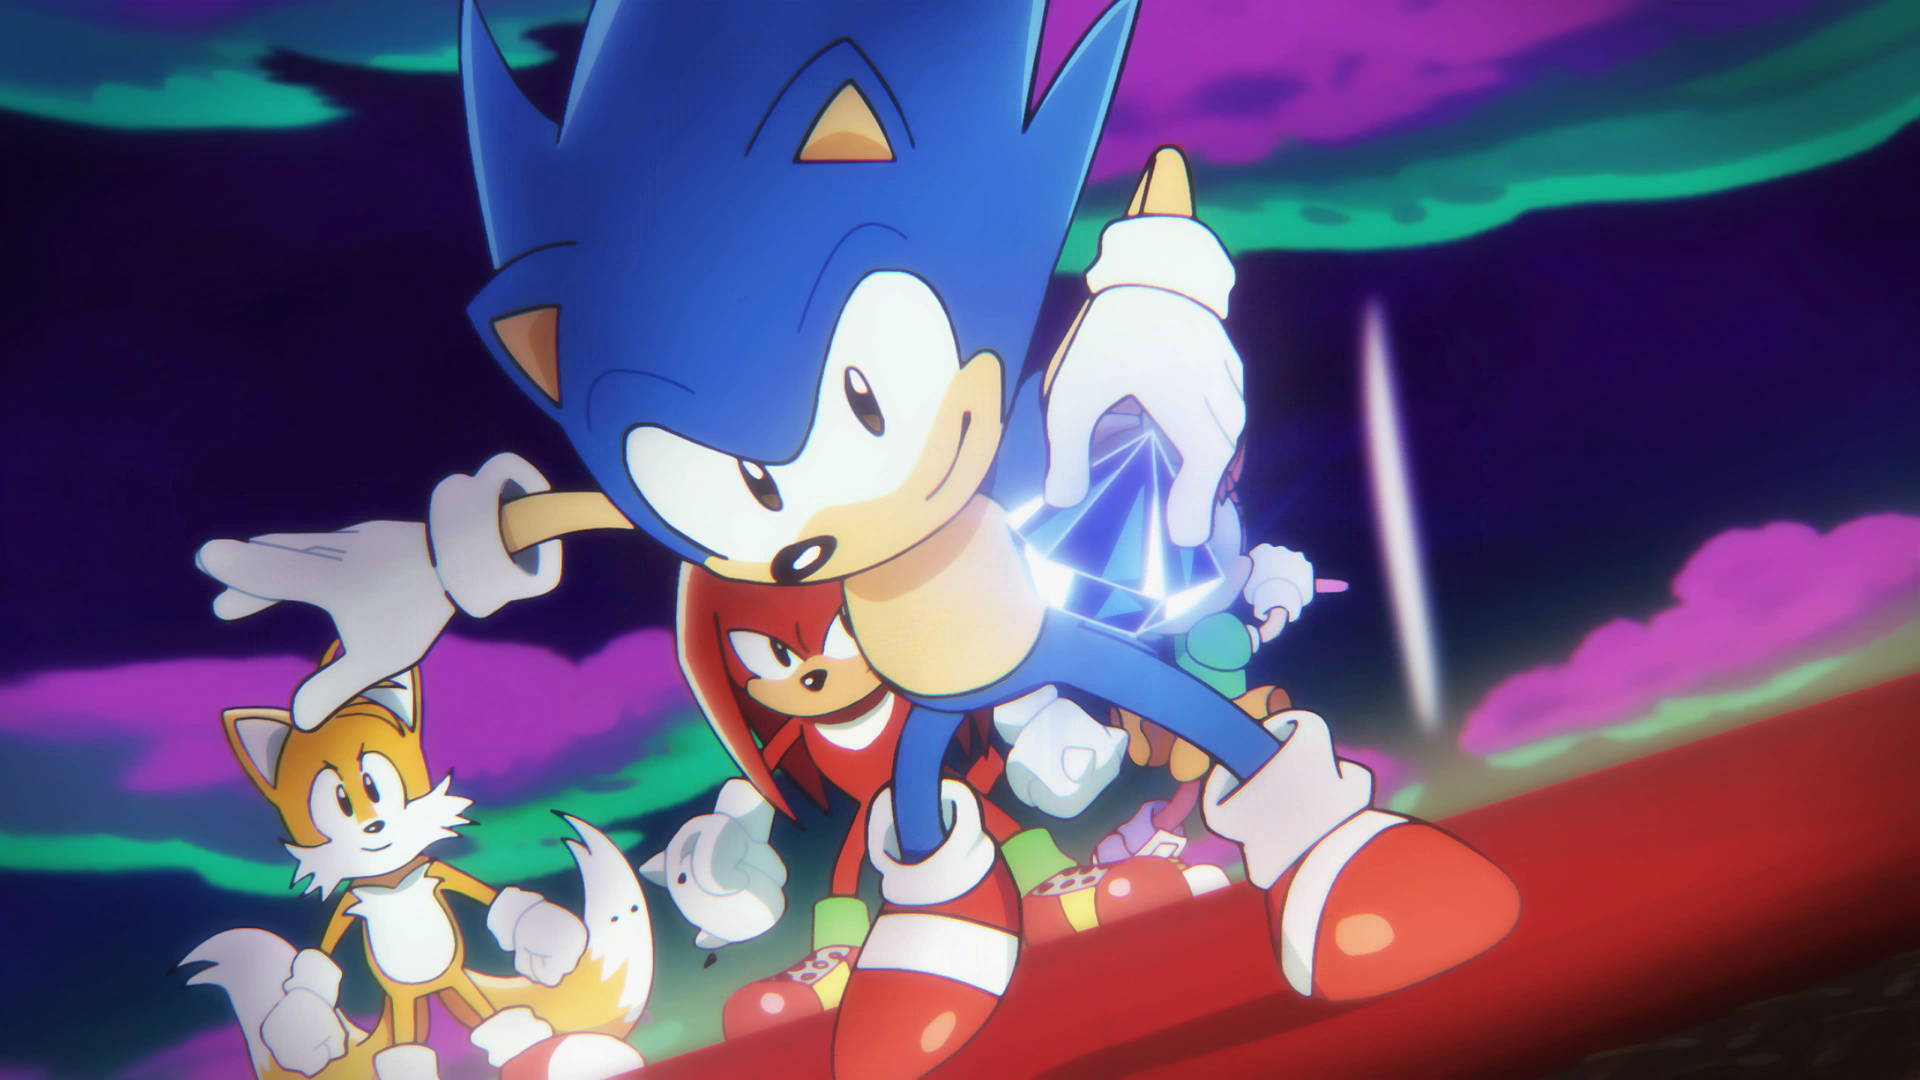 Le nouveau jeu Nintendo Switch Sonic Superstars est déjà en